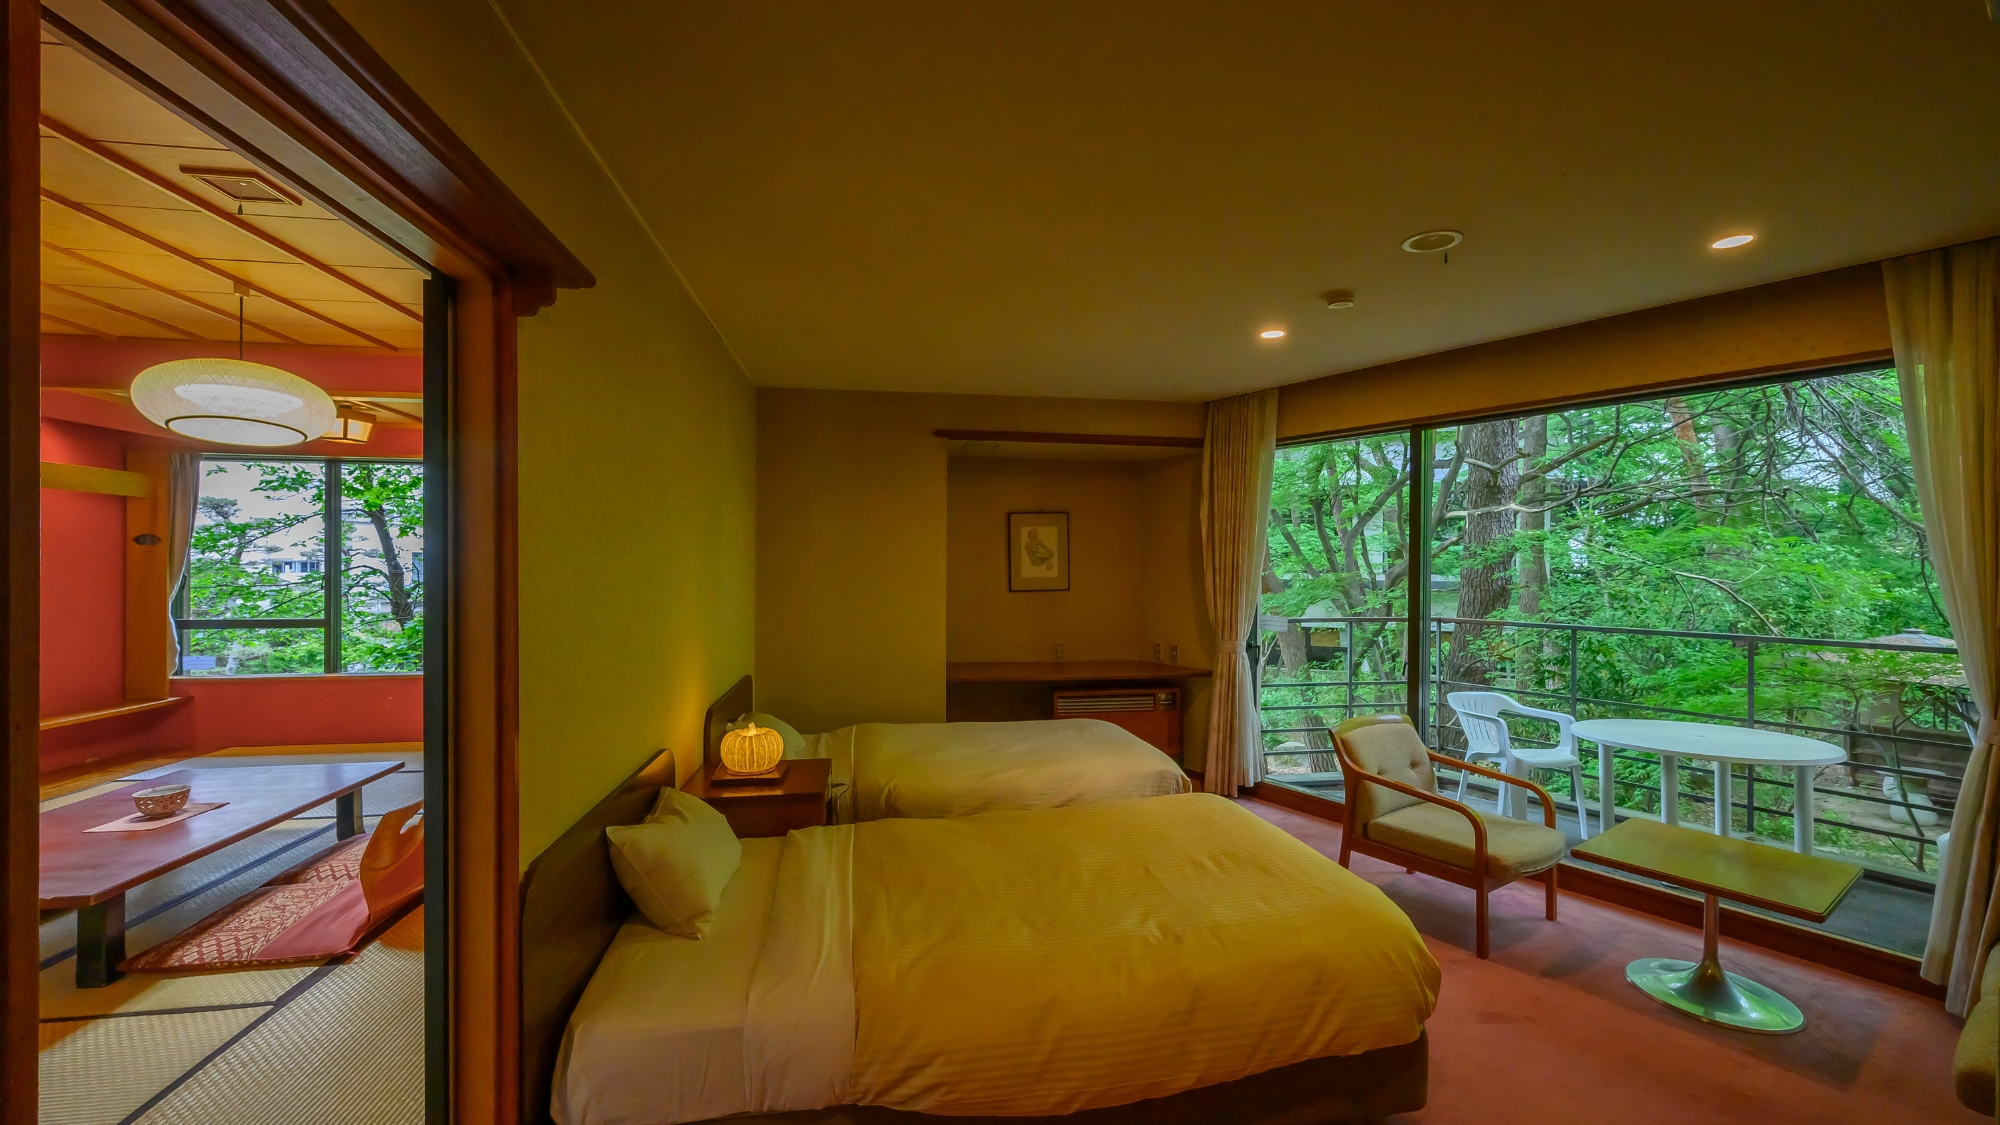 【庭園ビューテラス付ツインベッド和洋室】ツインベッドのお部屋と和室の二間のゆったりとしたお部屋です。